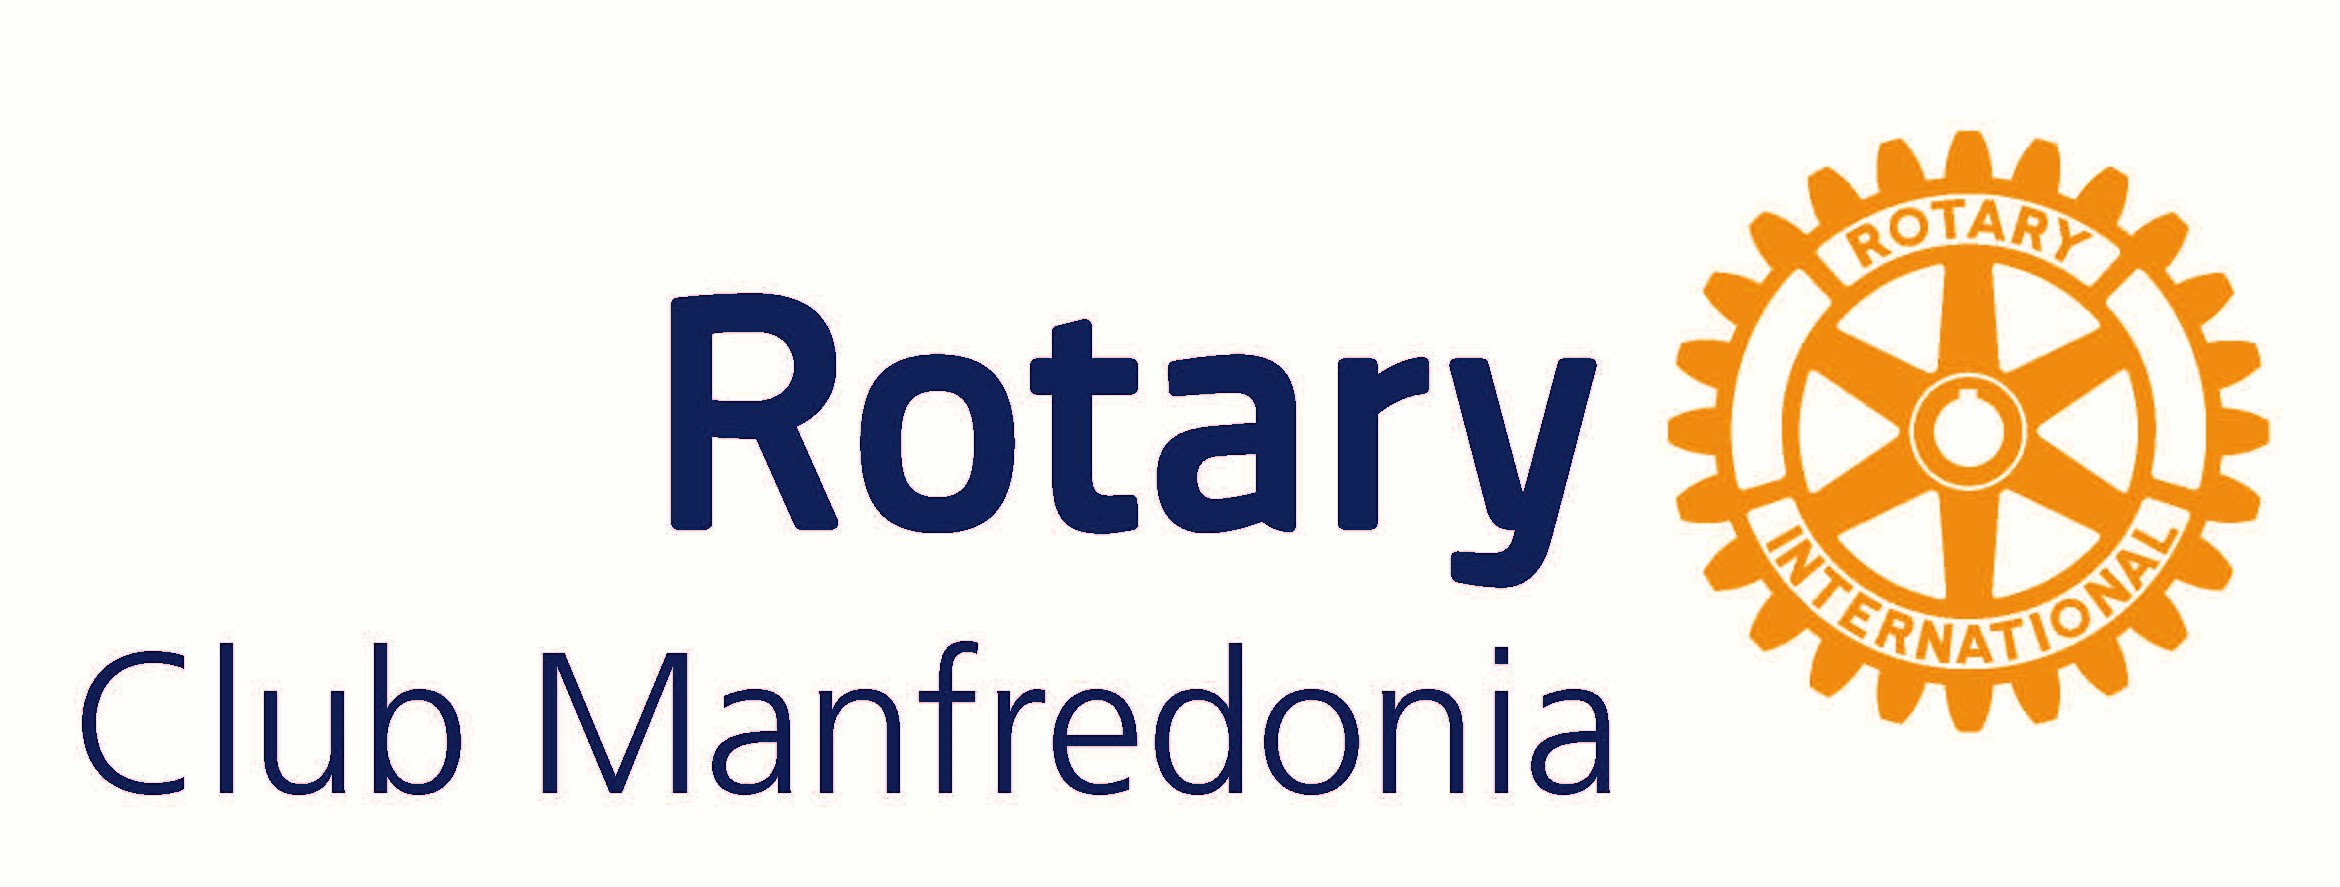 Rotary Club Manfredonia